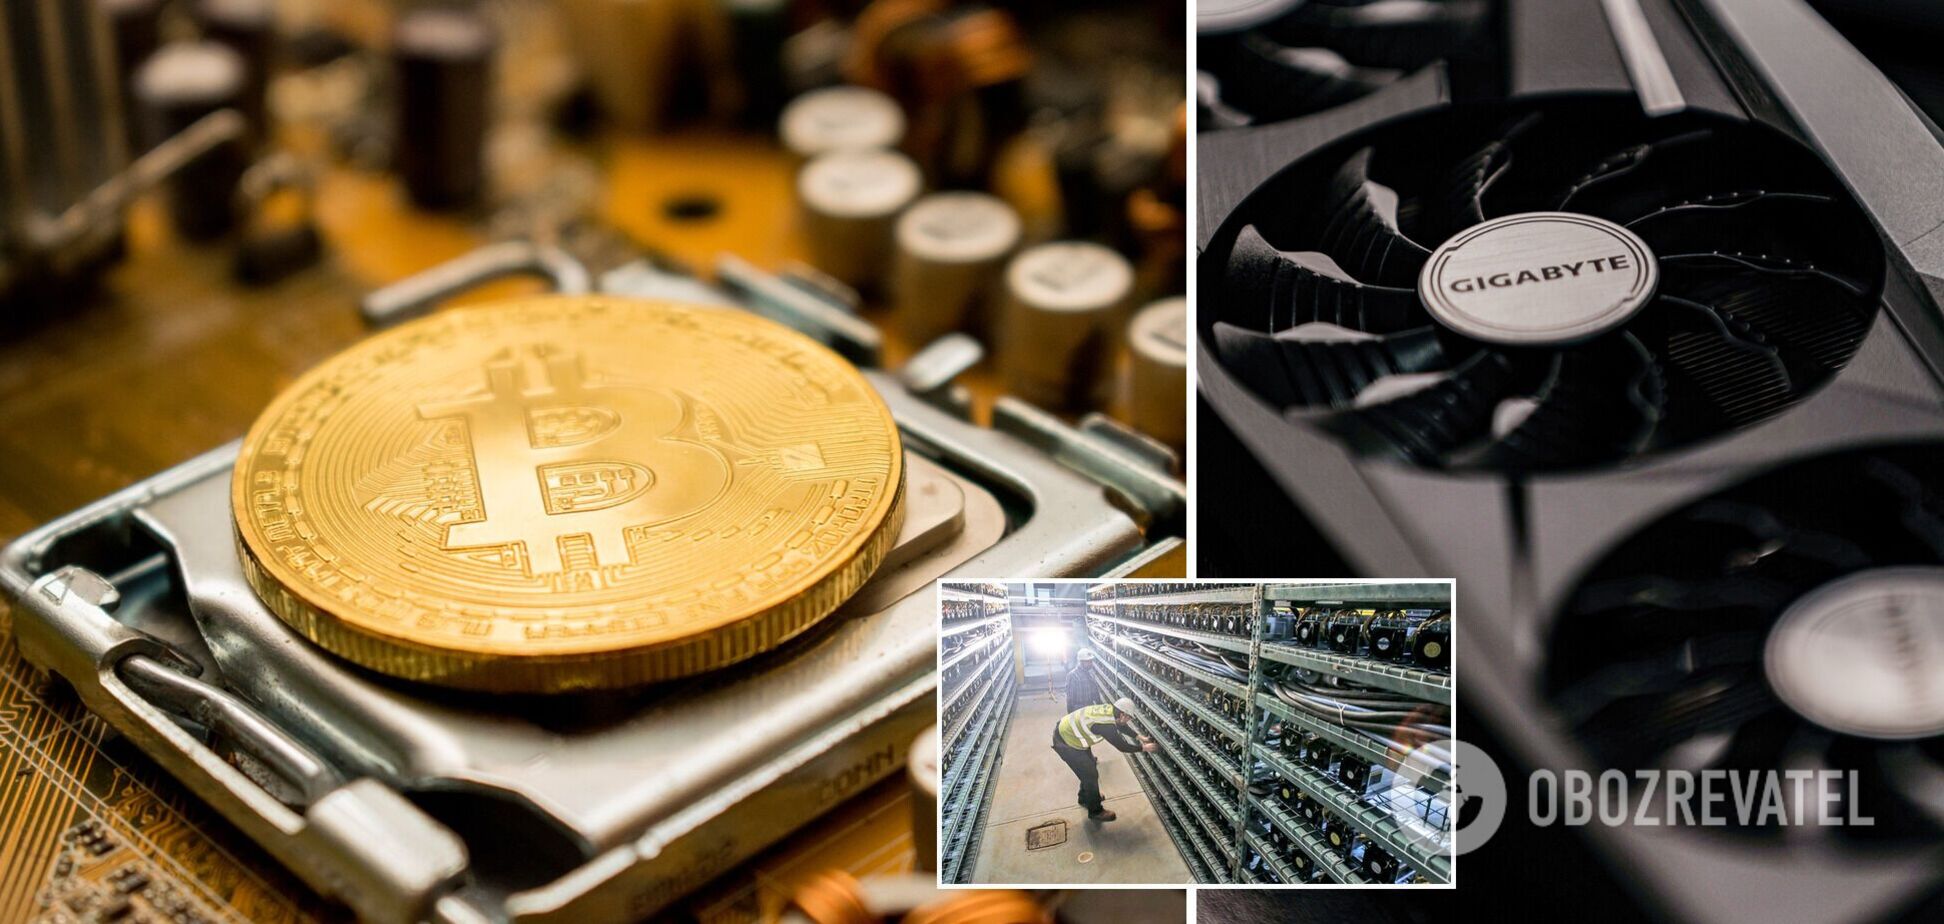 Біткоїн-ферми змушені розпродавати свої монети та техніку через обвал на ринку